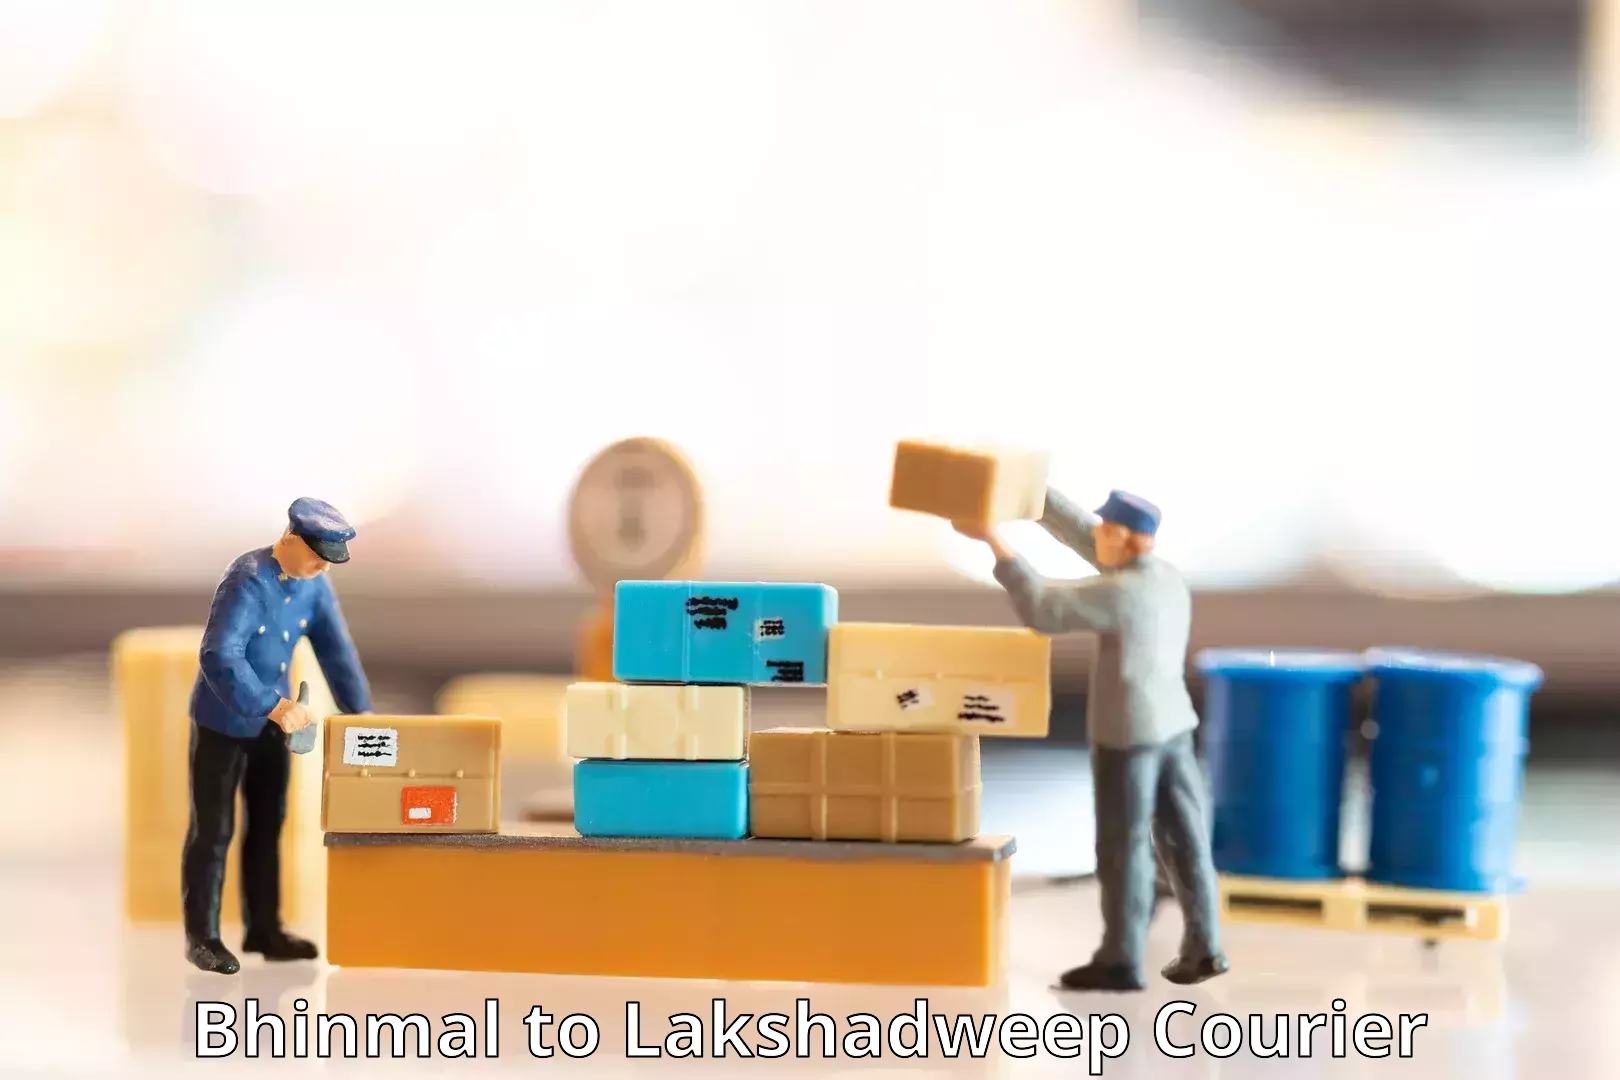 International parcel service Bhinmal to Lakshadweep